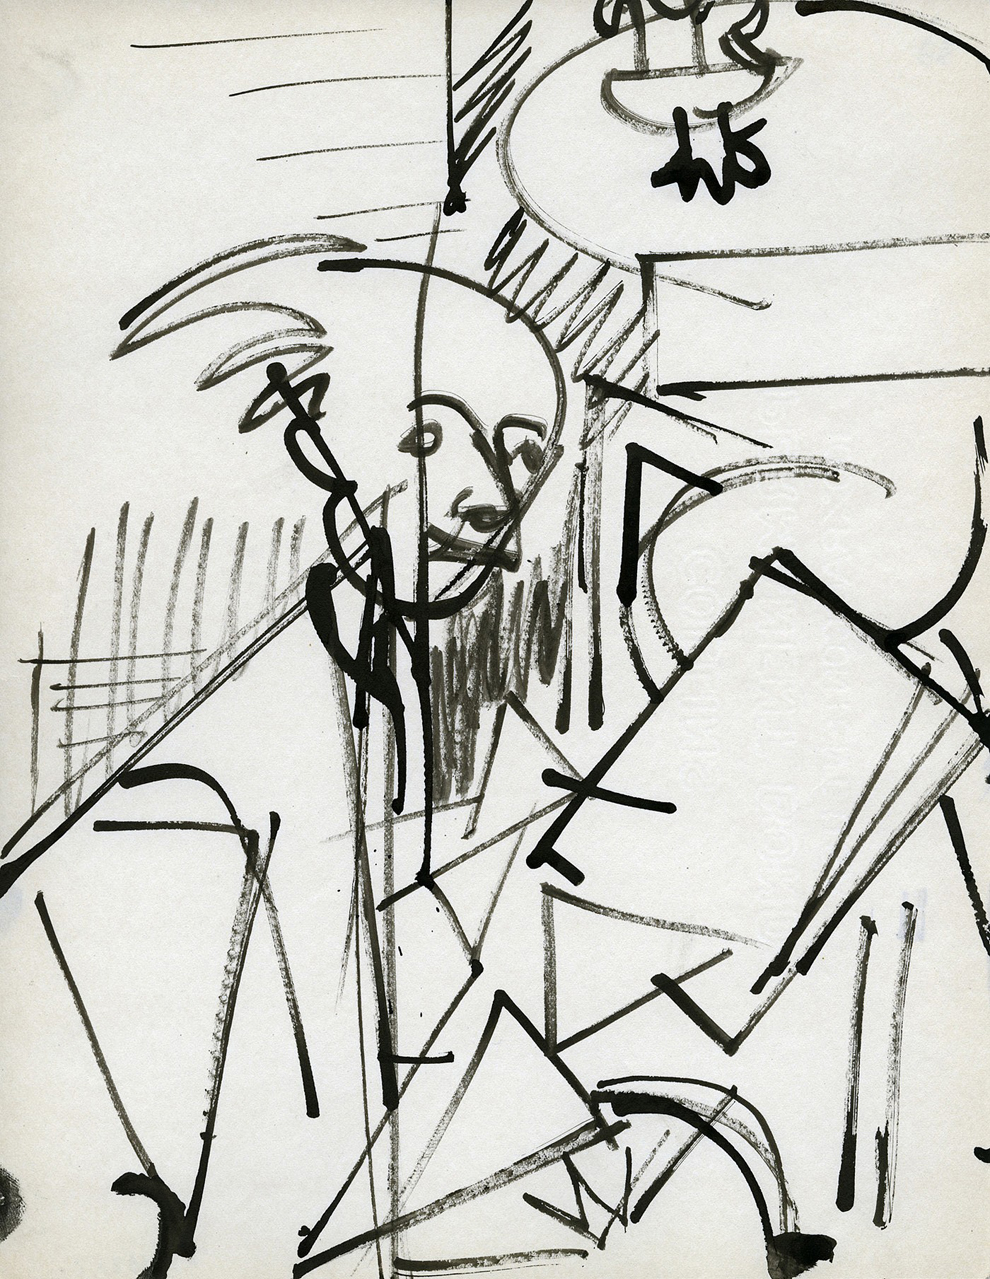 Hans Hofmann - Self Portrait